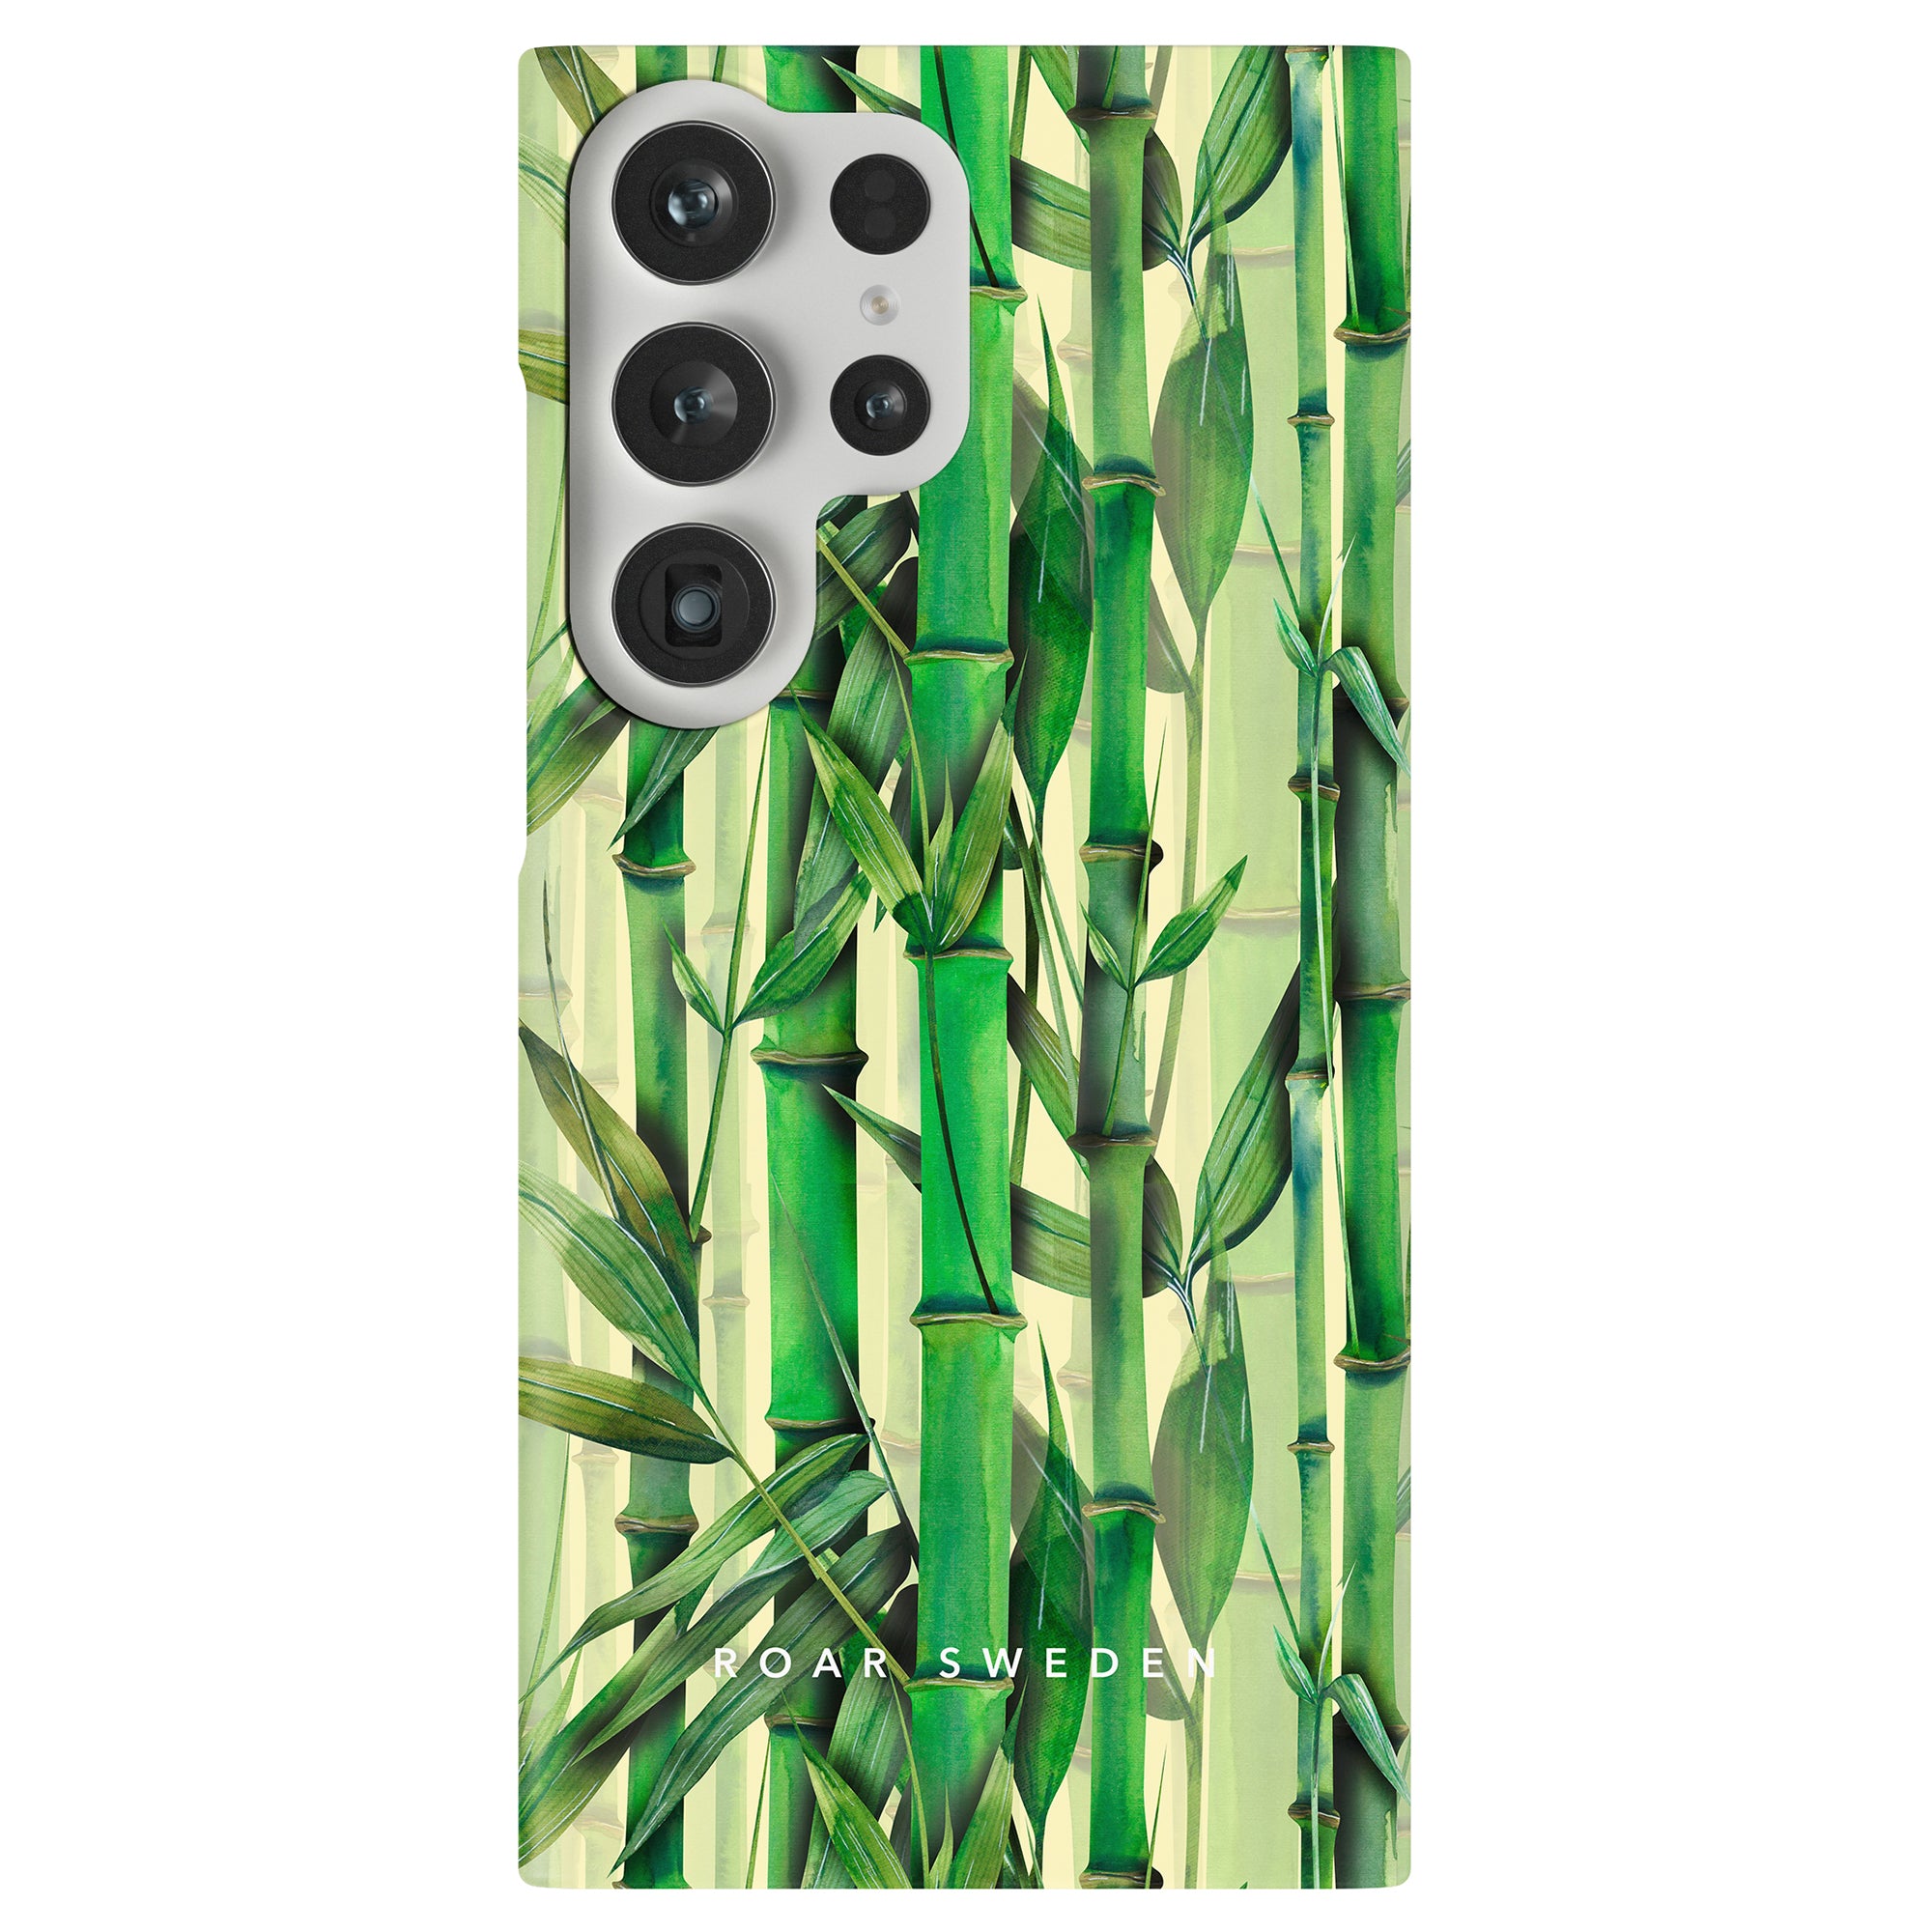 Ett Bambu - Slim Fodral med ett grönt bambumönster.